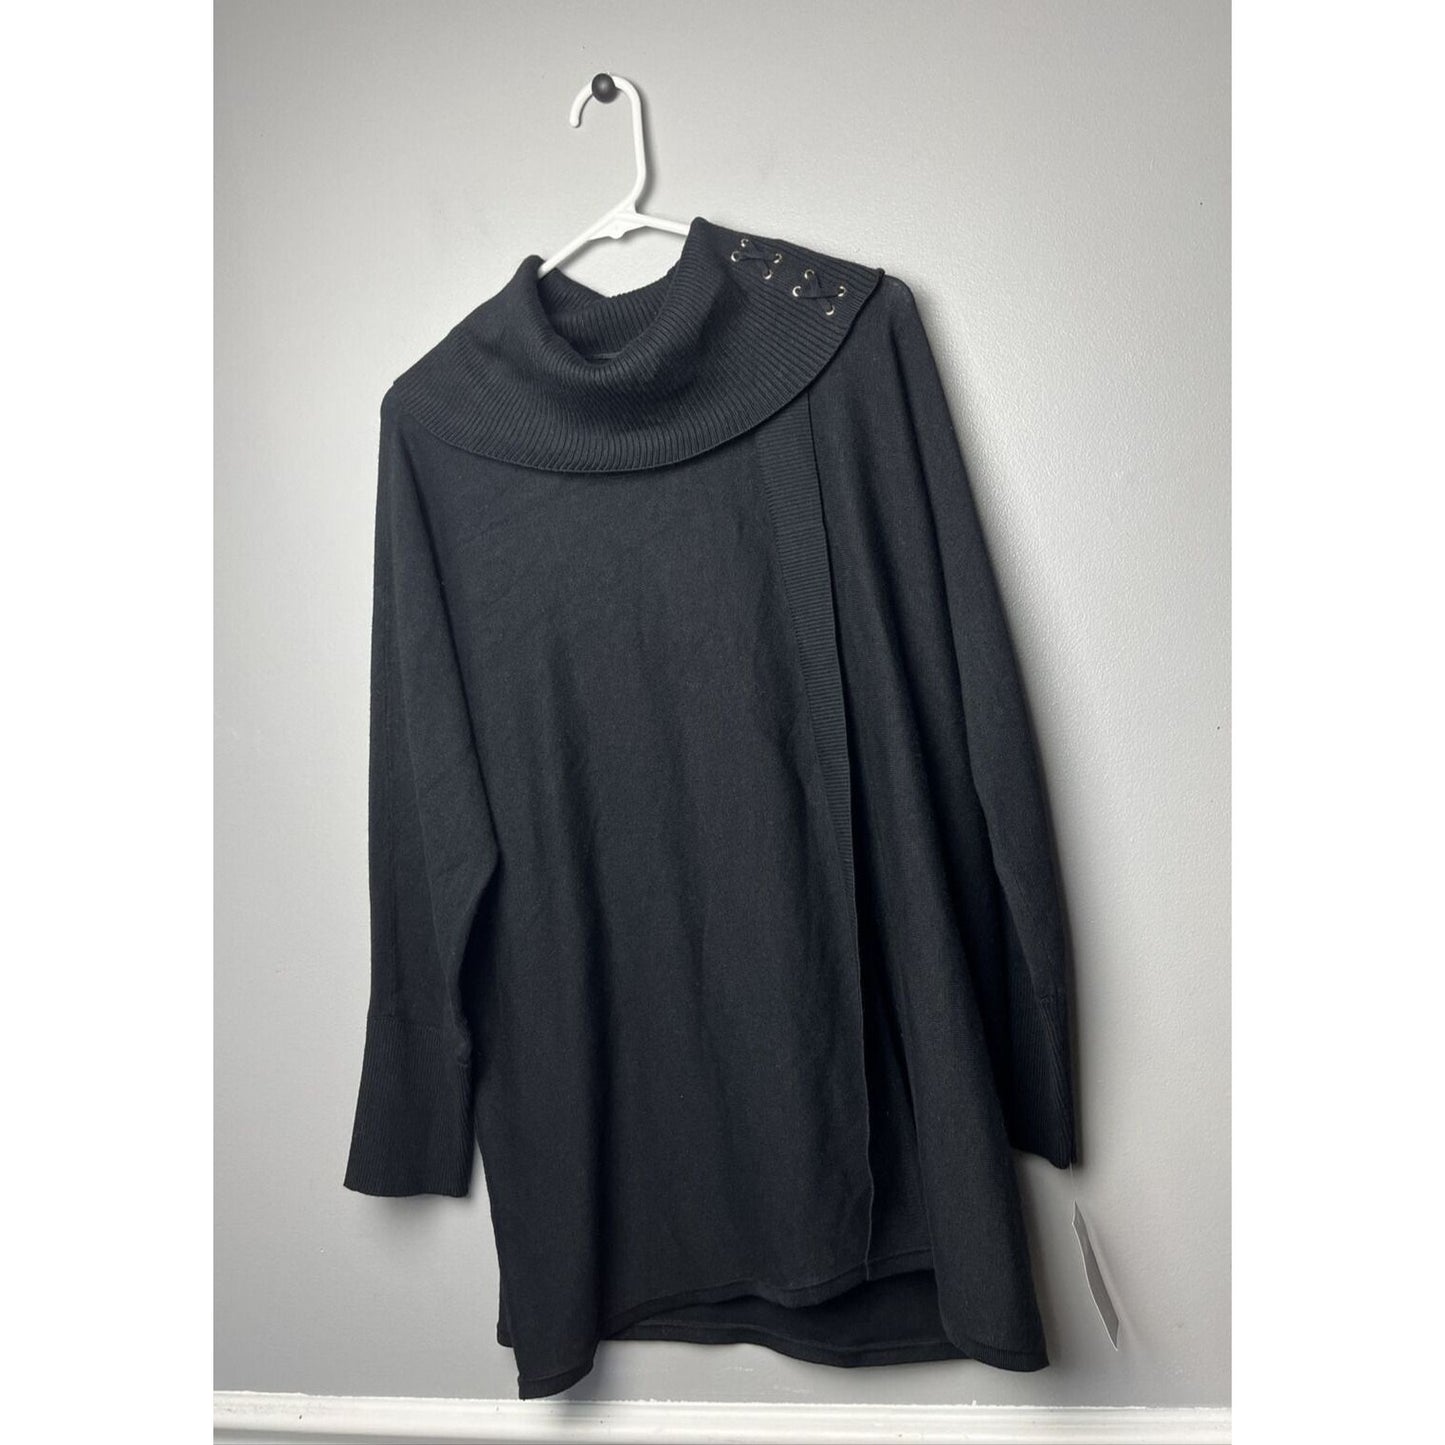 JM Collection Women's Faux Wrap Cowl Neck Sweater Black Size 0X